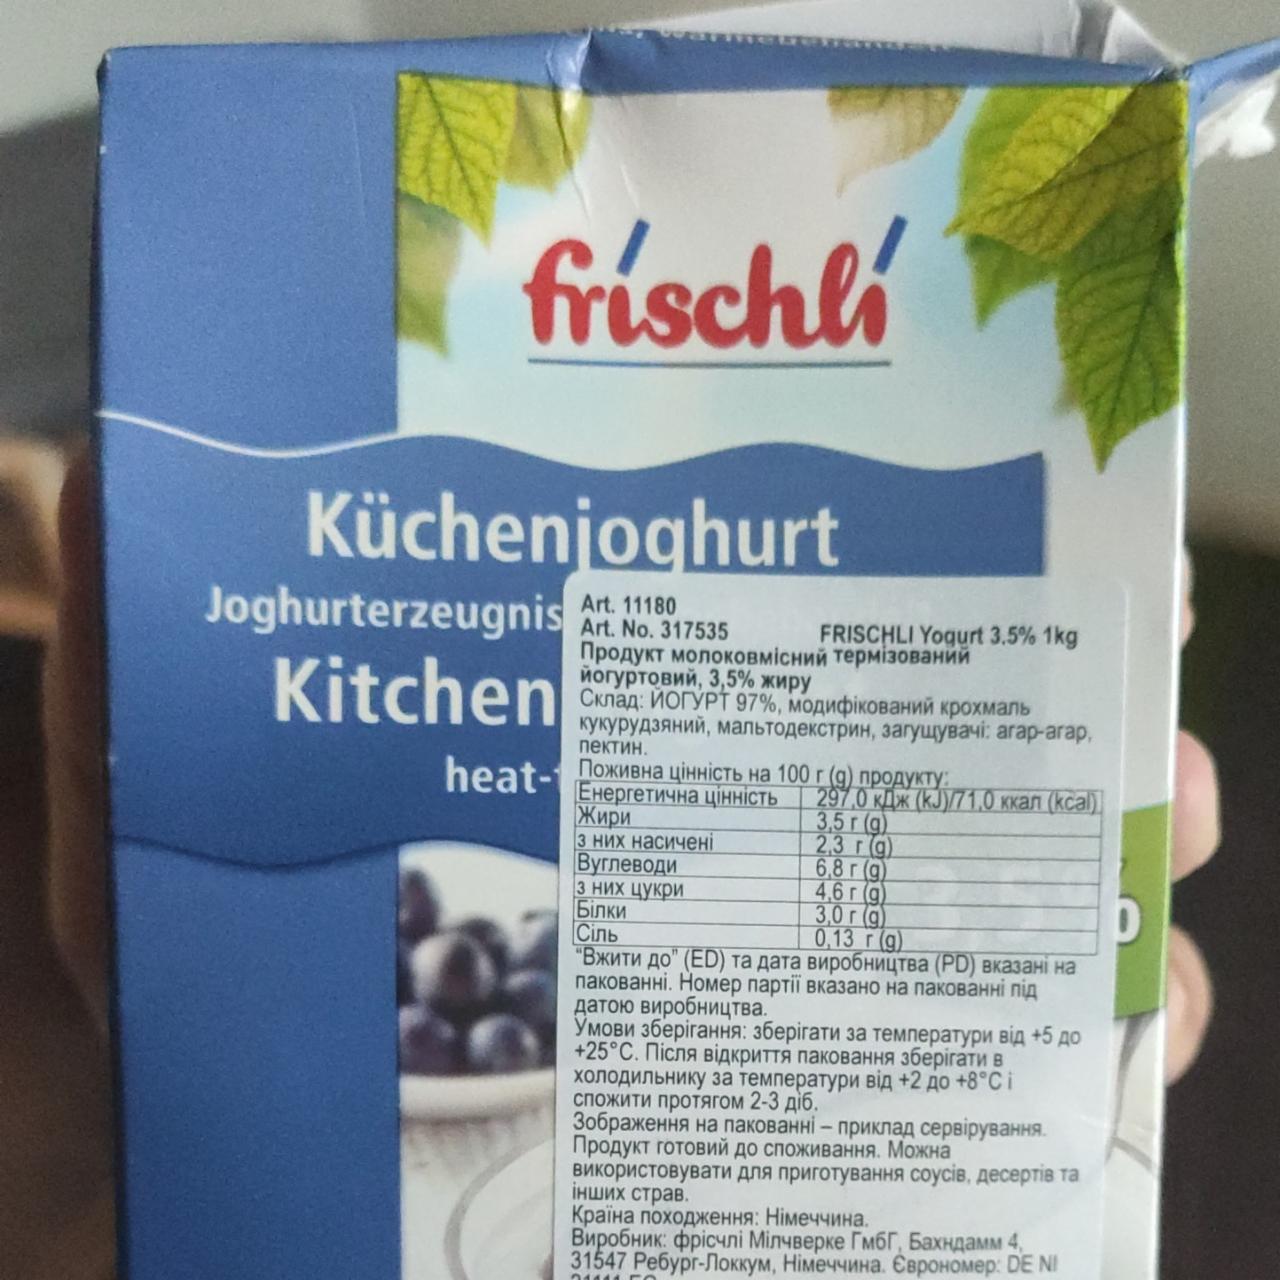 Фото - Продукт молоковмісний термізований йогуртовий 3.5% Frischli